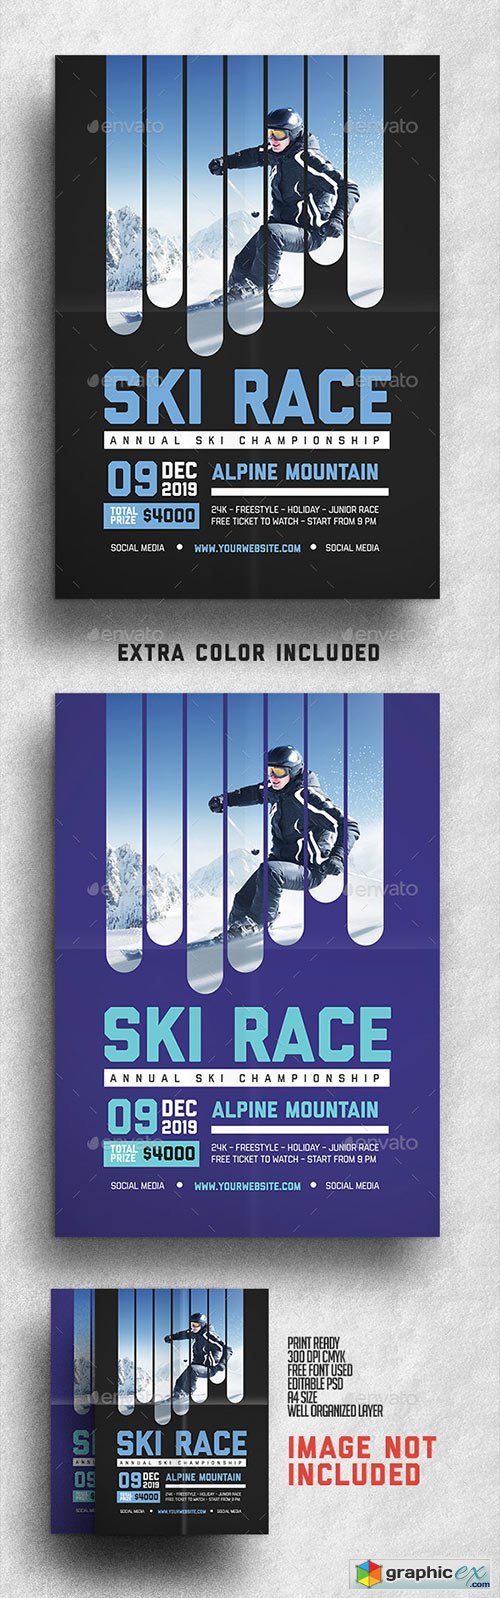 Ski Race Flyer